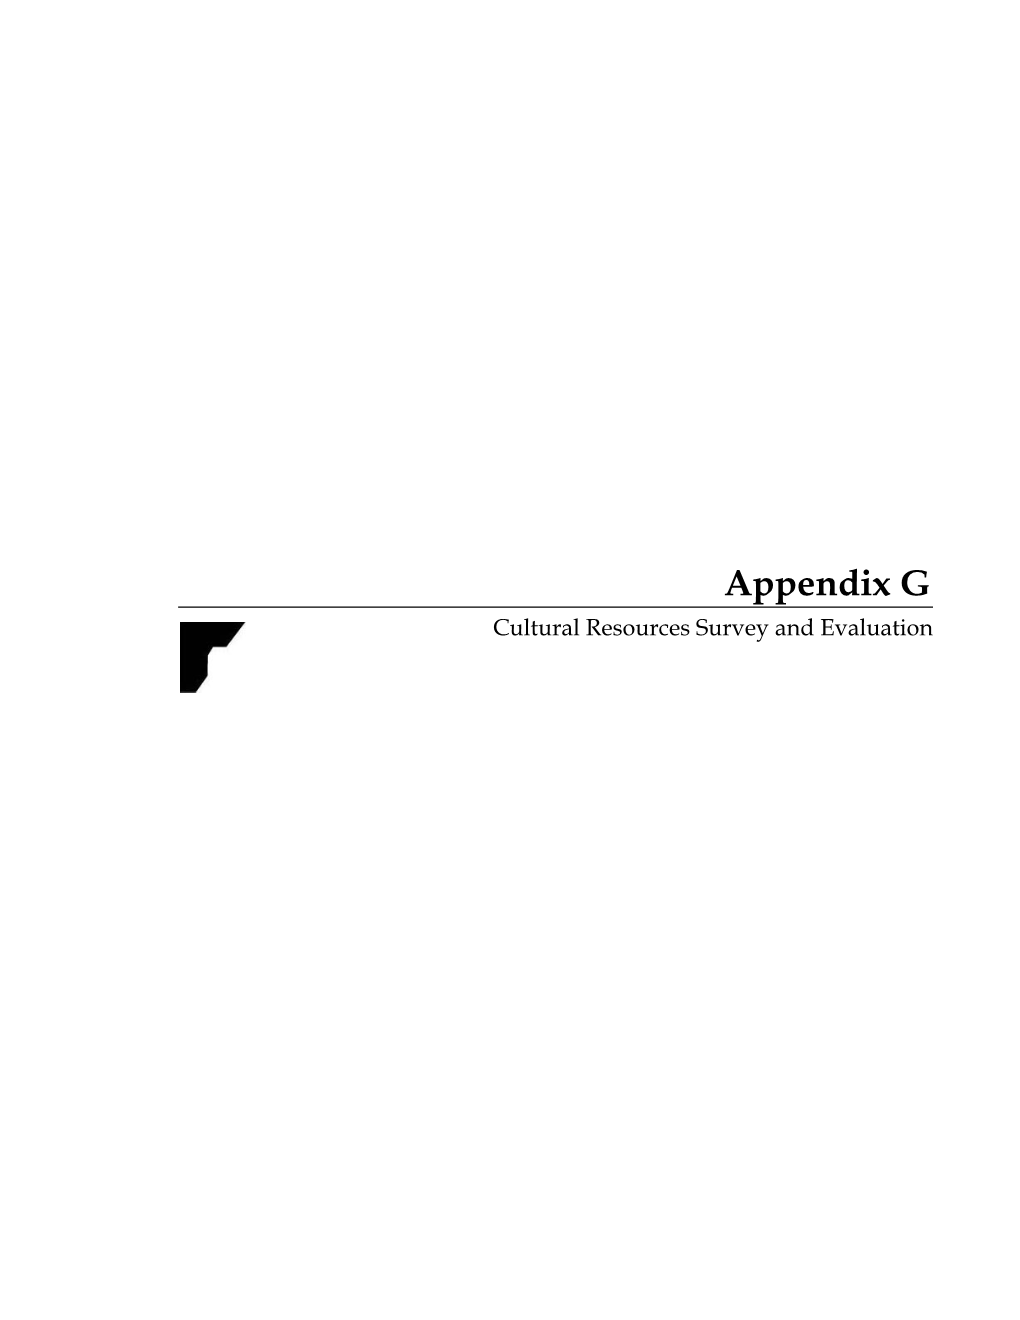 Appendix G Cultural Resources Survey and Evaluation